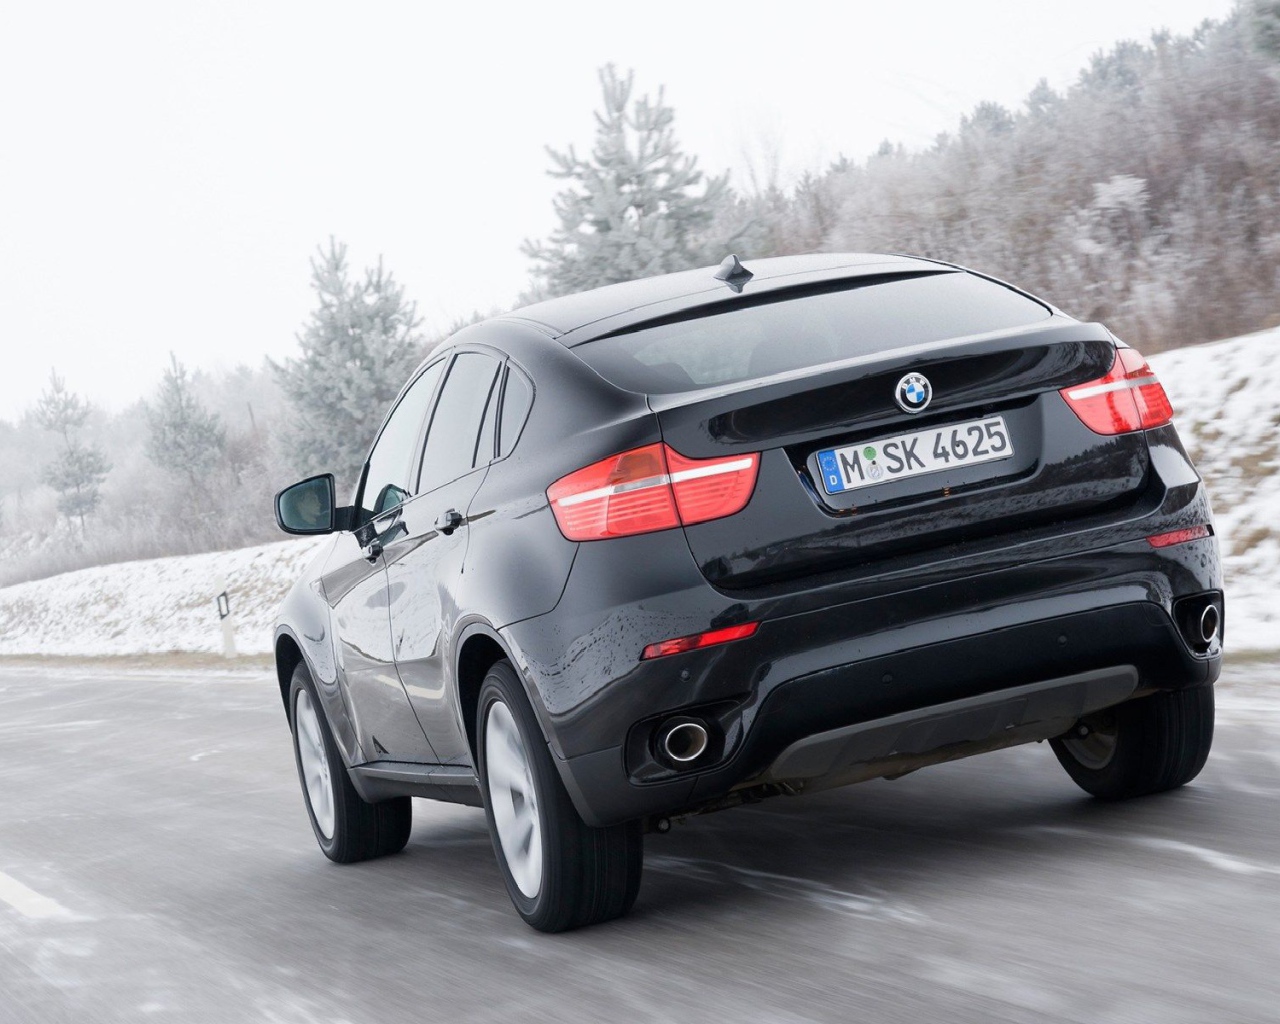 Надежная машина BMW X6 2014 года года